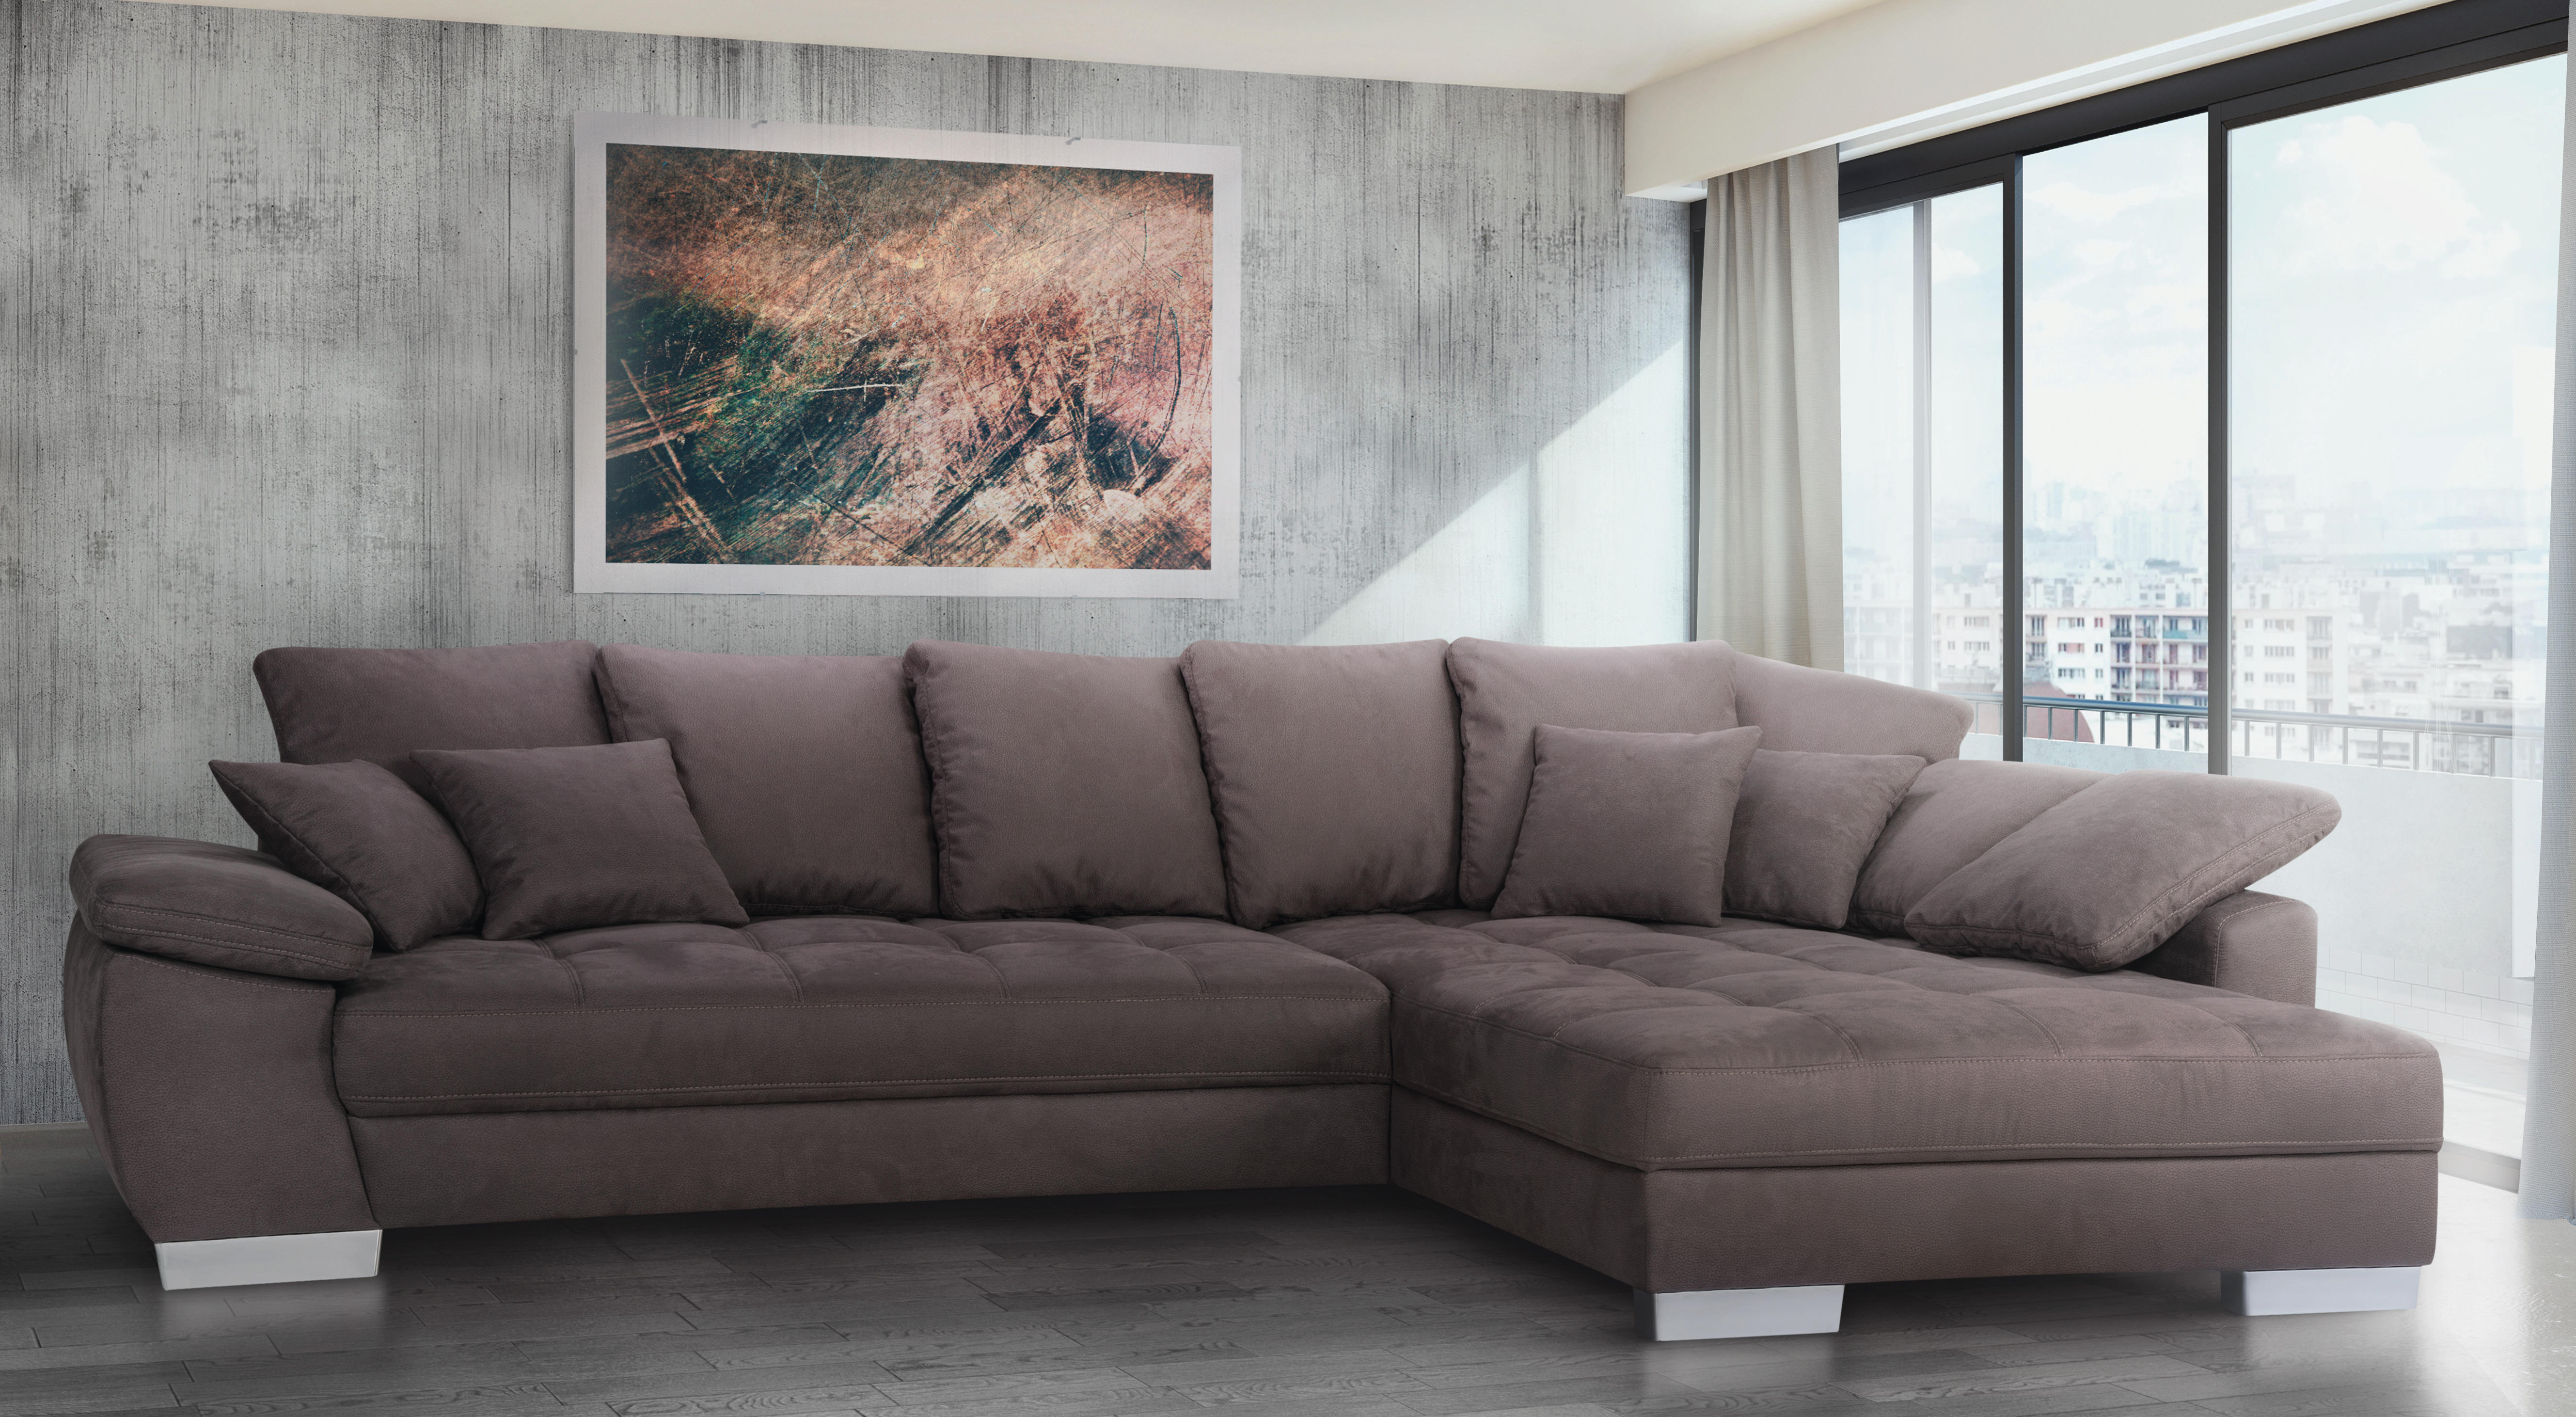 Sofabett günstig kaufen - Bewundern Sie dem Favoriten